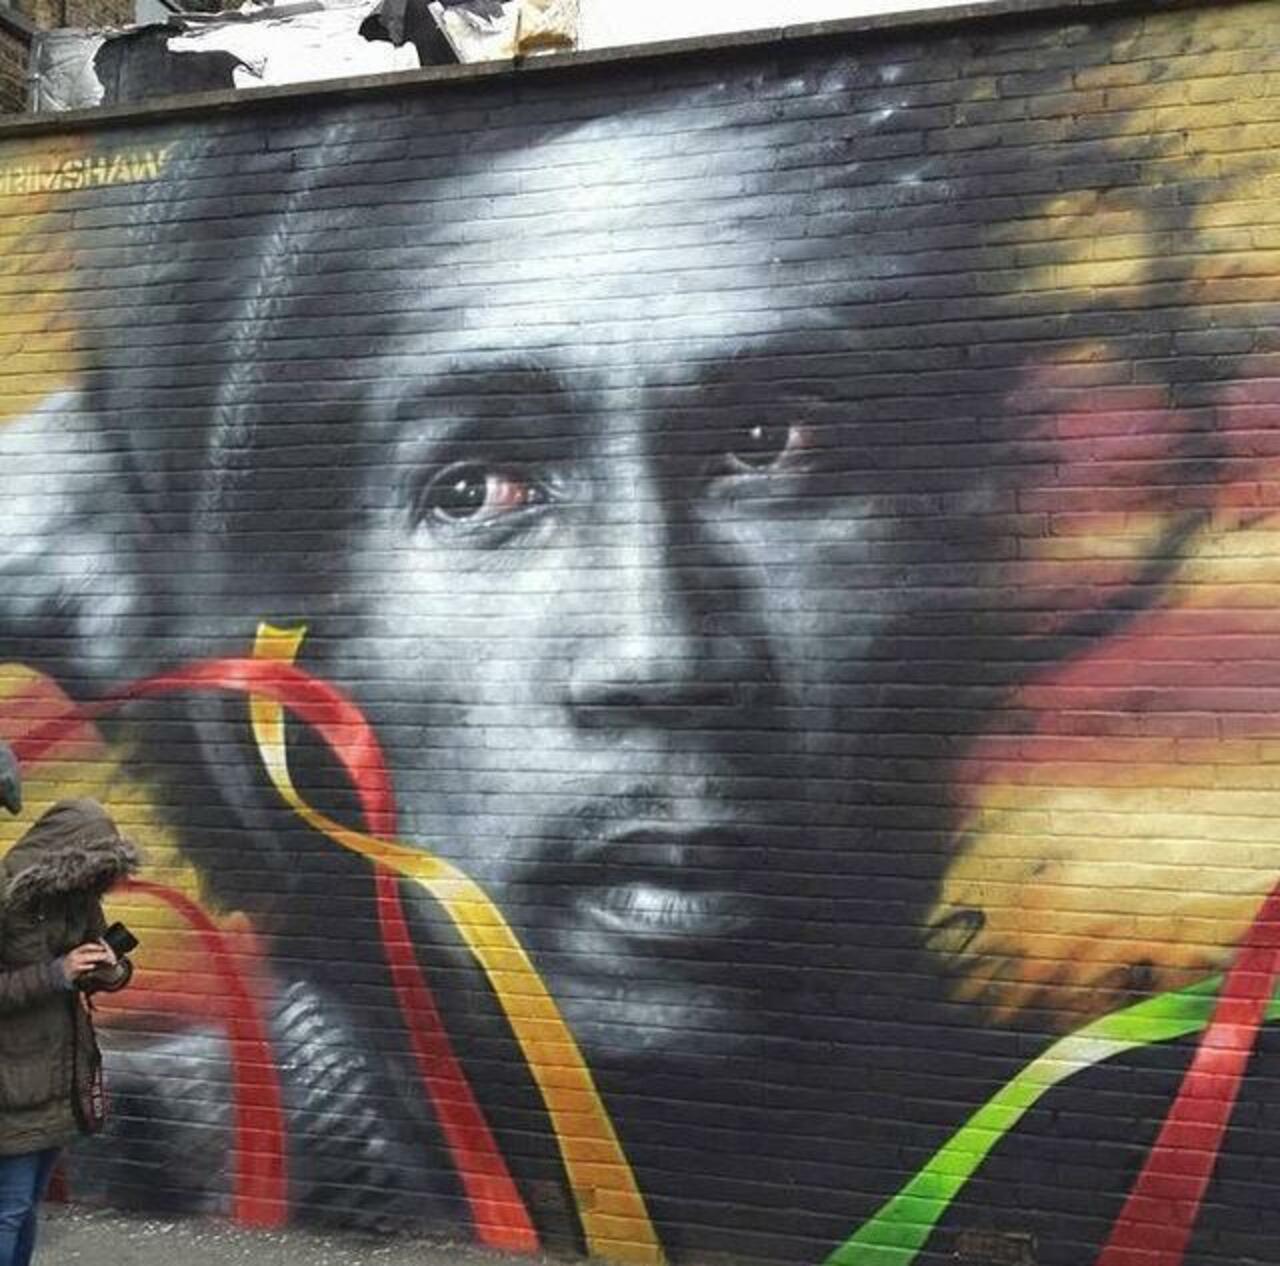 Bob Marley Street Art portrait by Dale Grimshaw in London 

#art #arte #graffiti #streetart http://t.co/fyA3rMYfxI